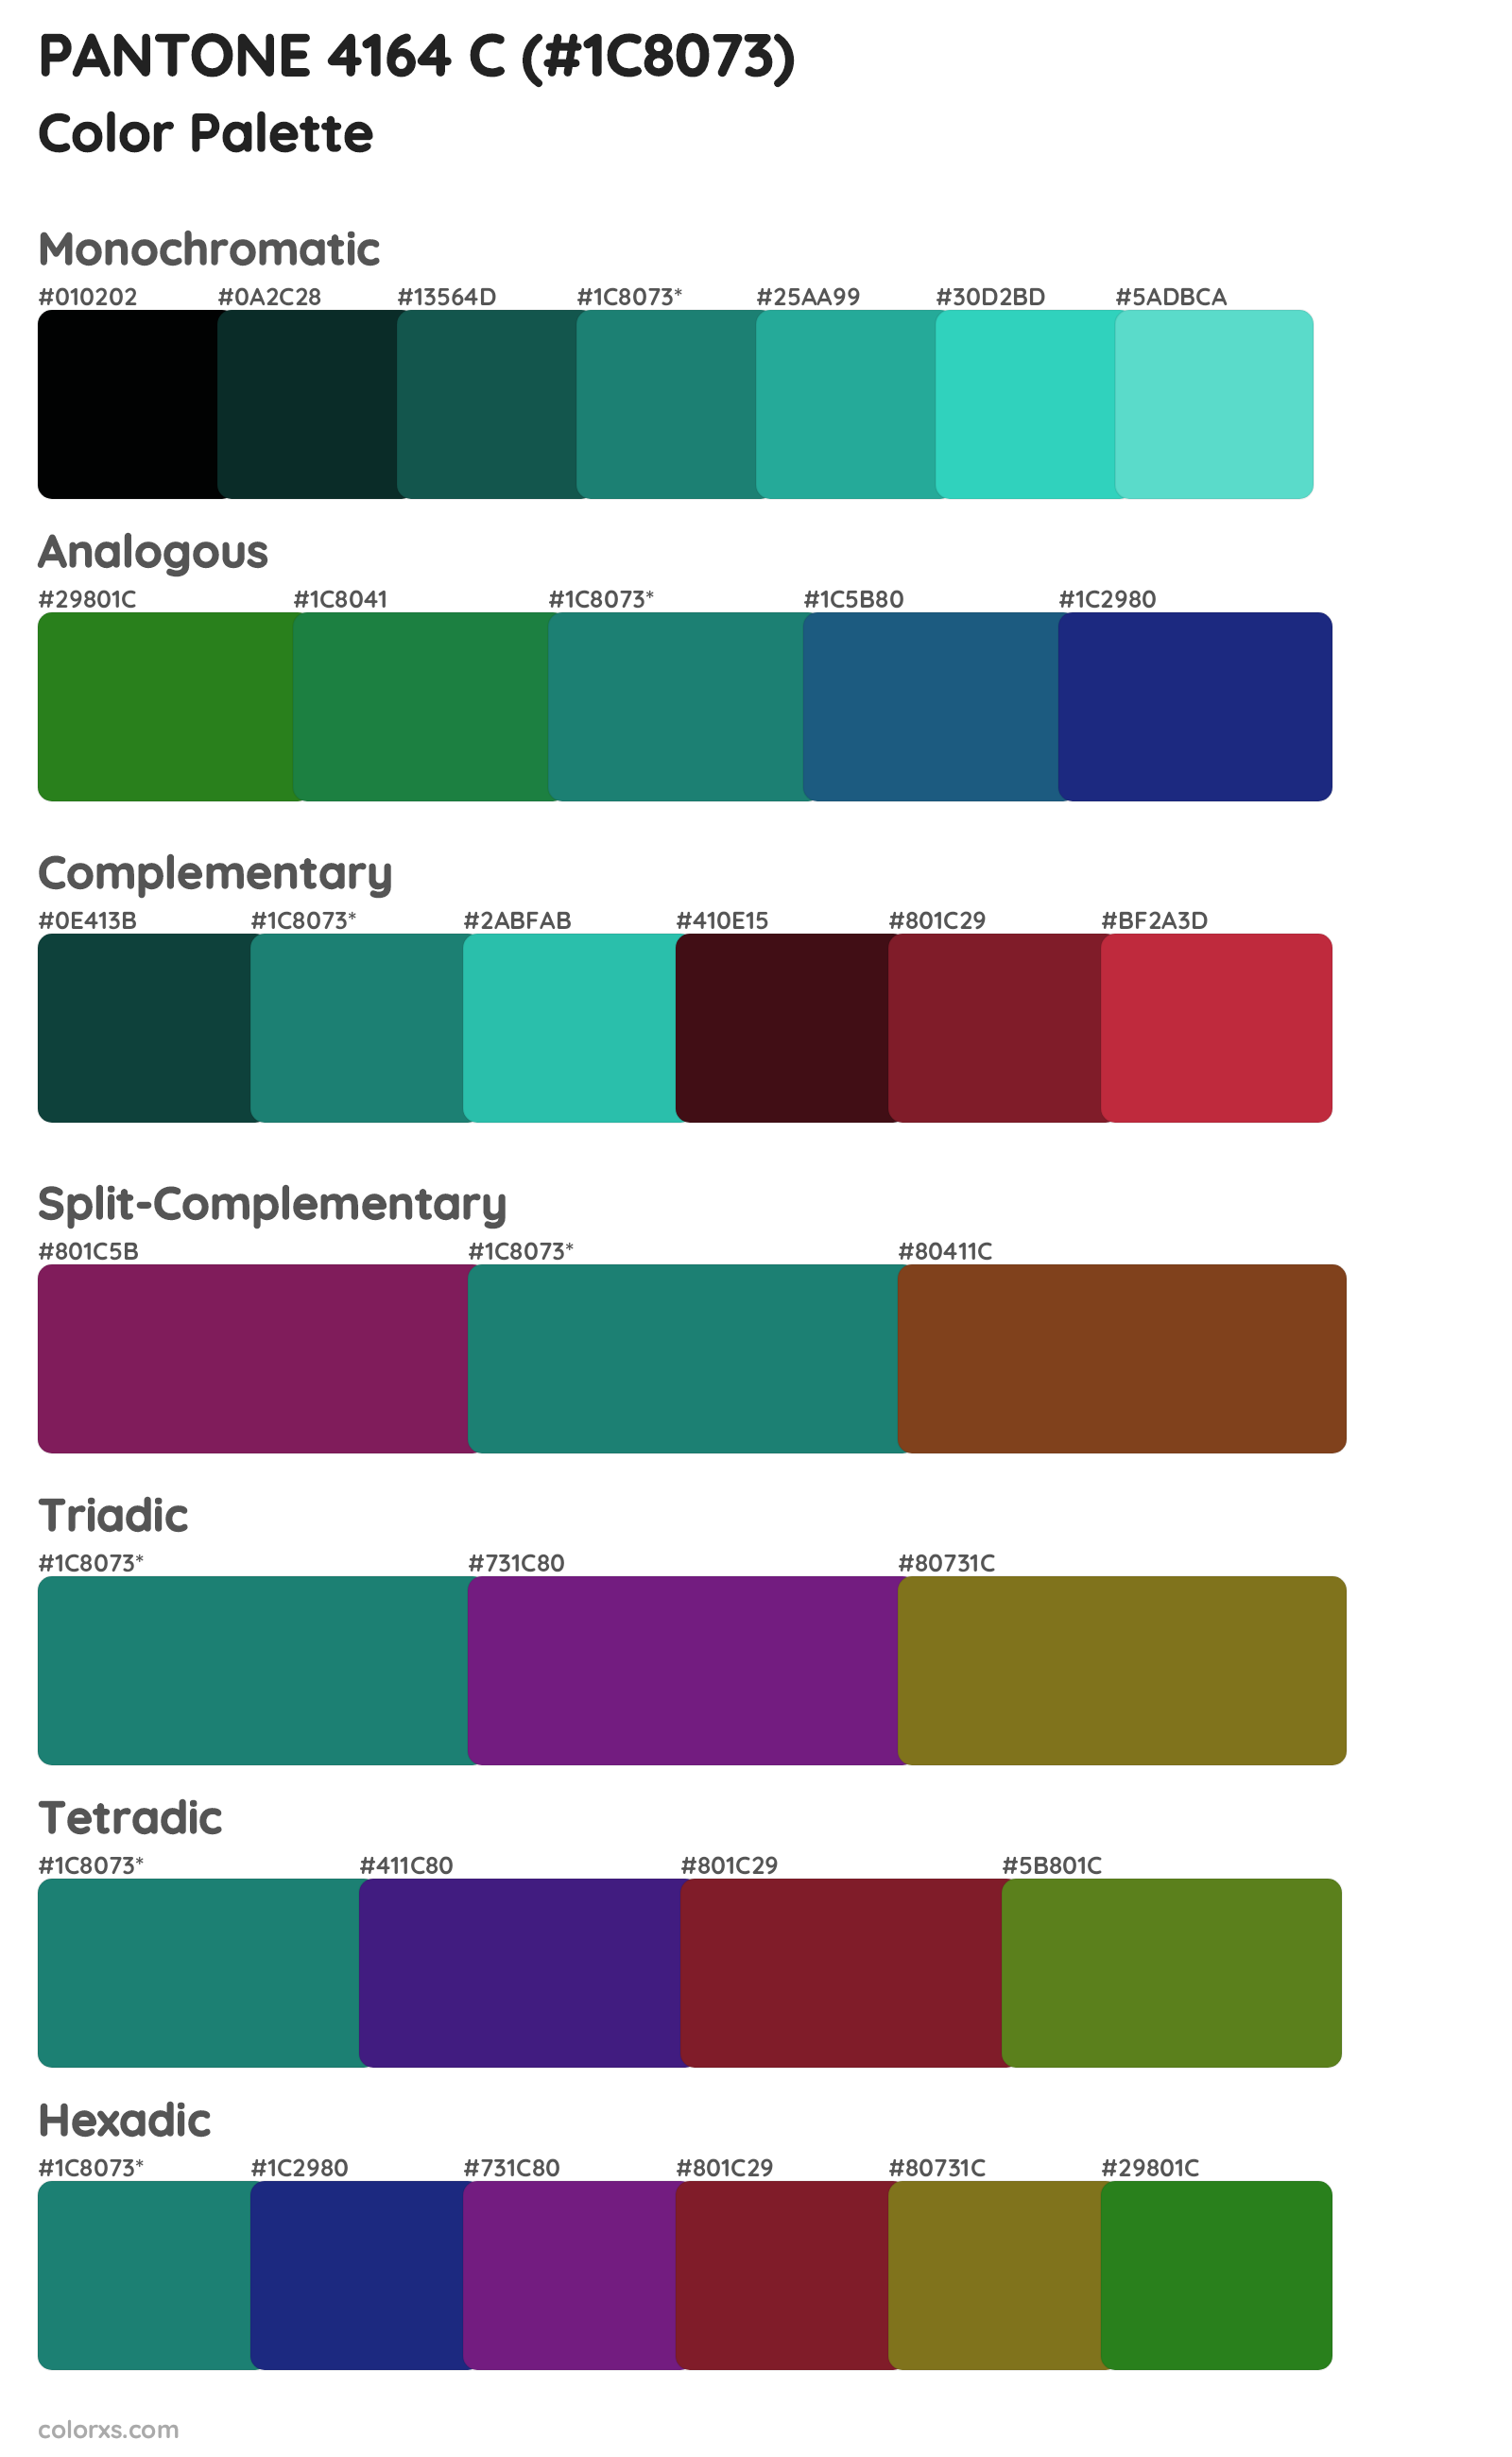 PANTONE 4164 C Color Scheme Palettes